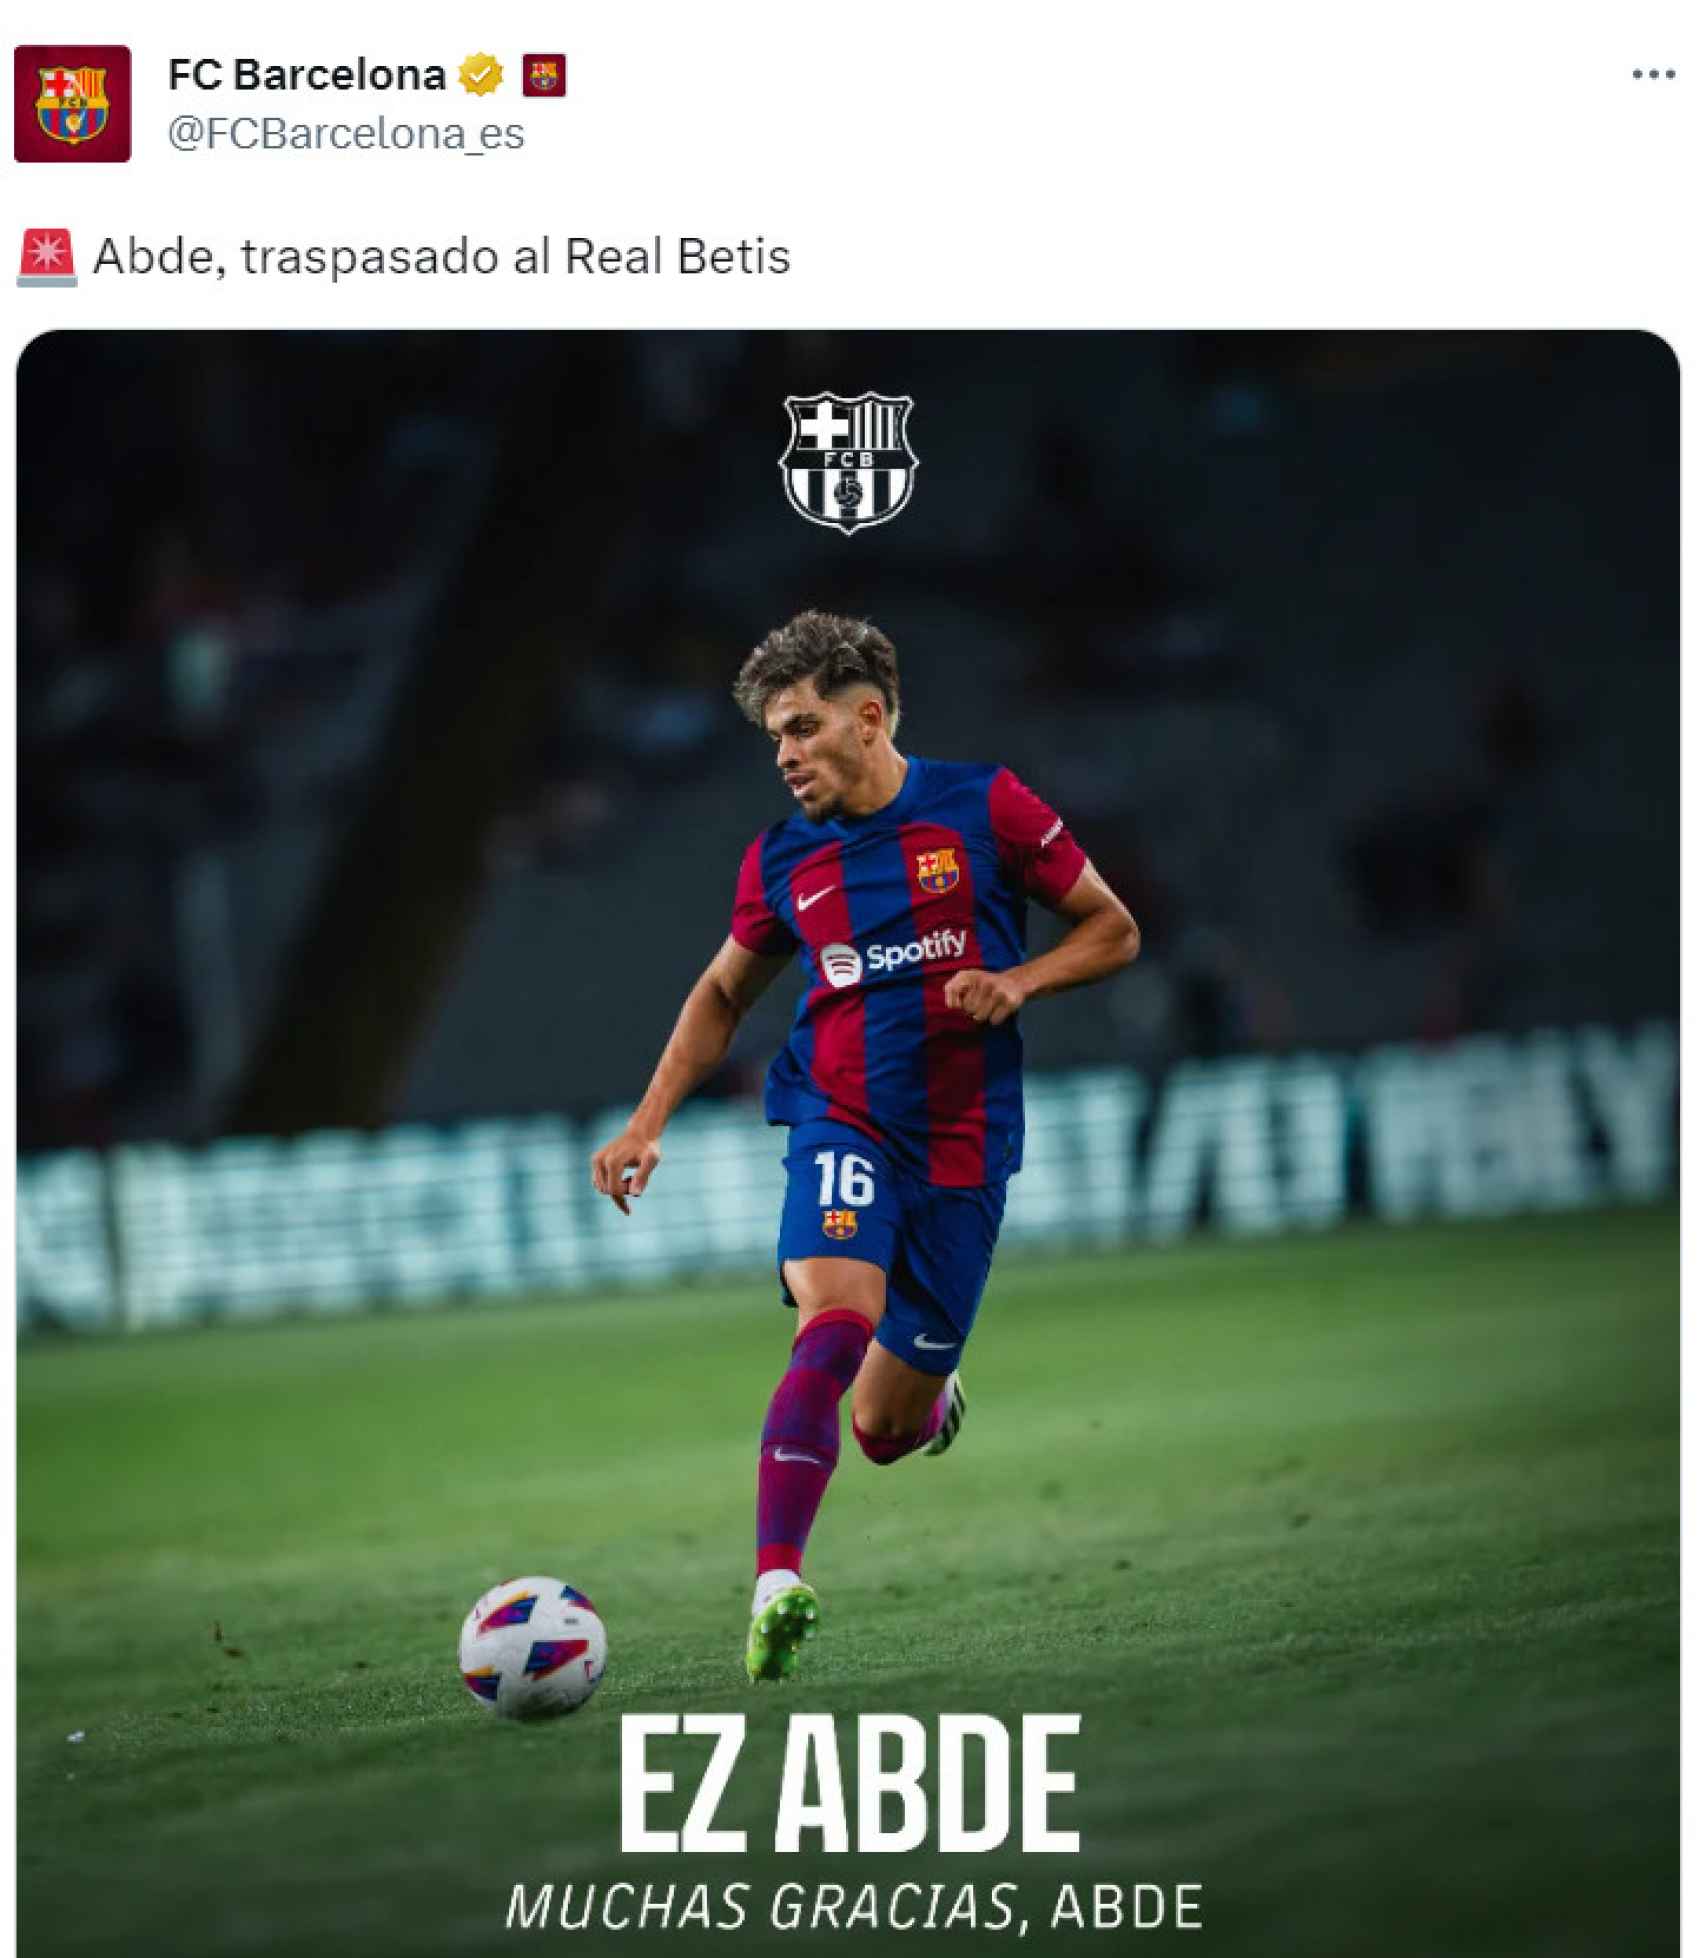 El Barça comunica el traspaso de Ez Abde al Real Betis Balompié